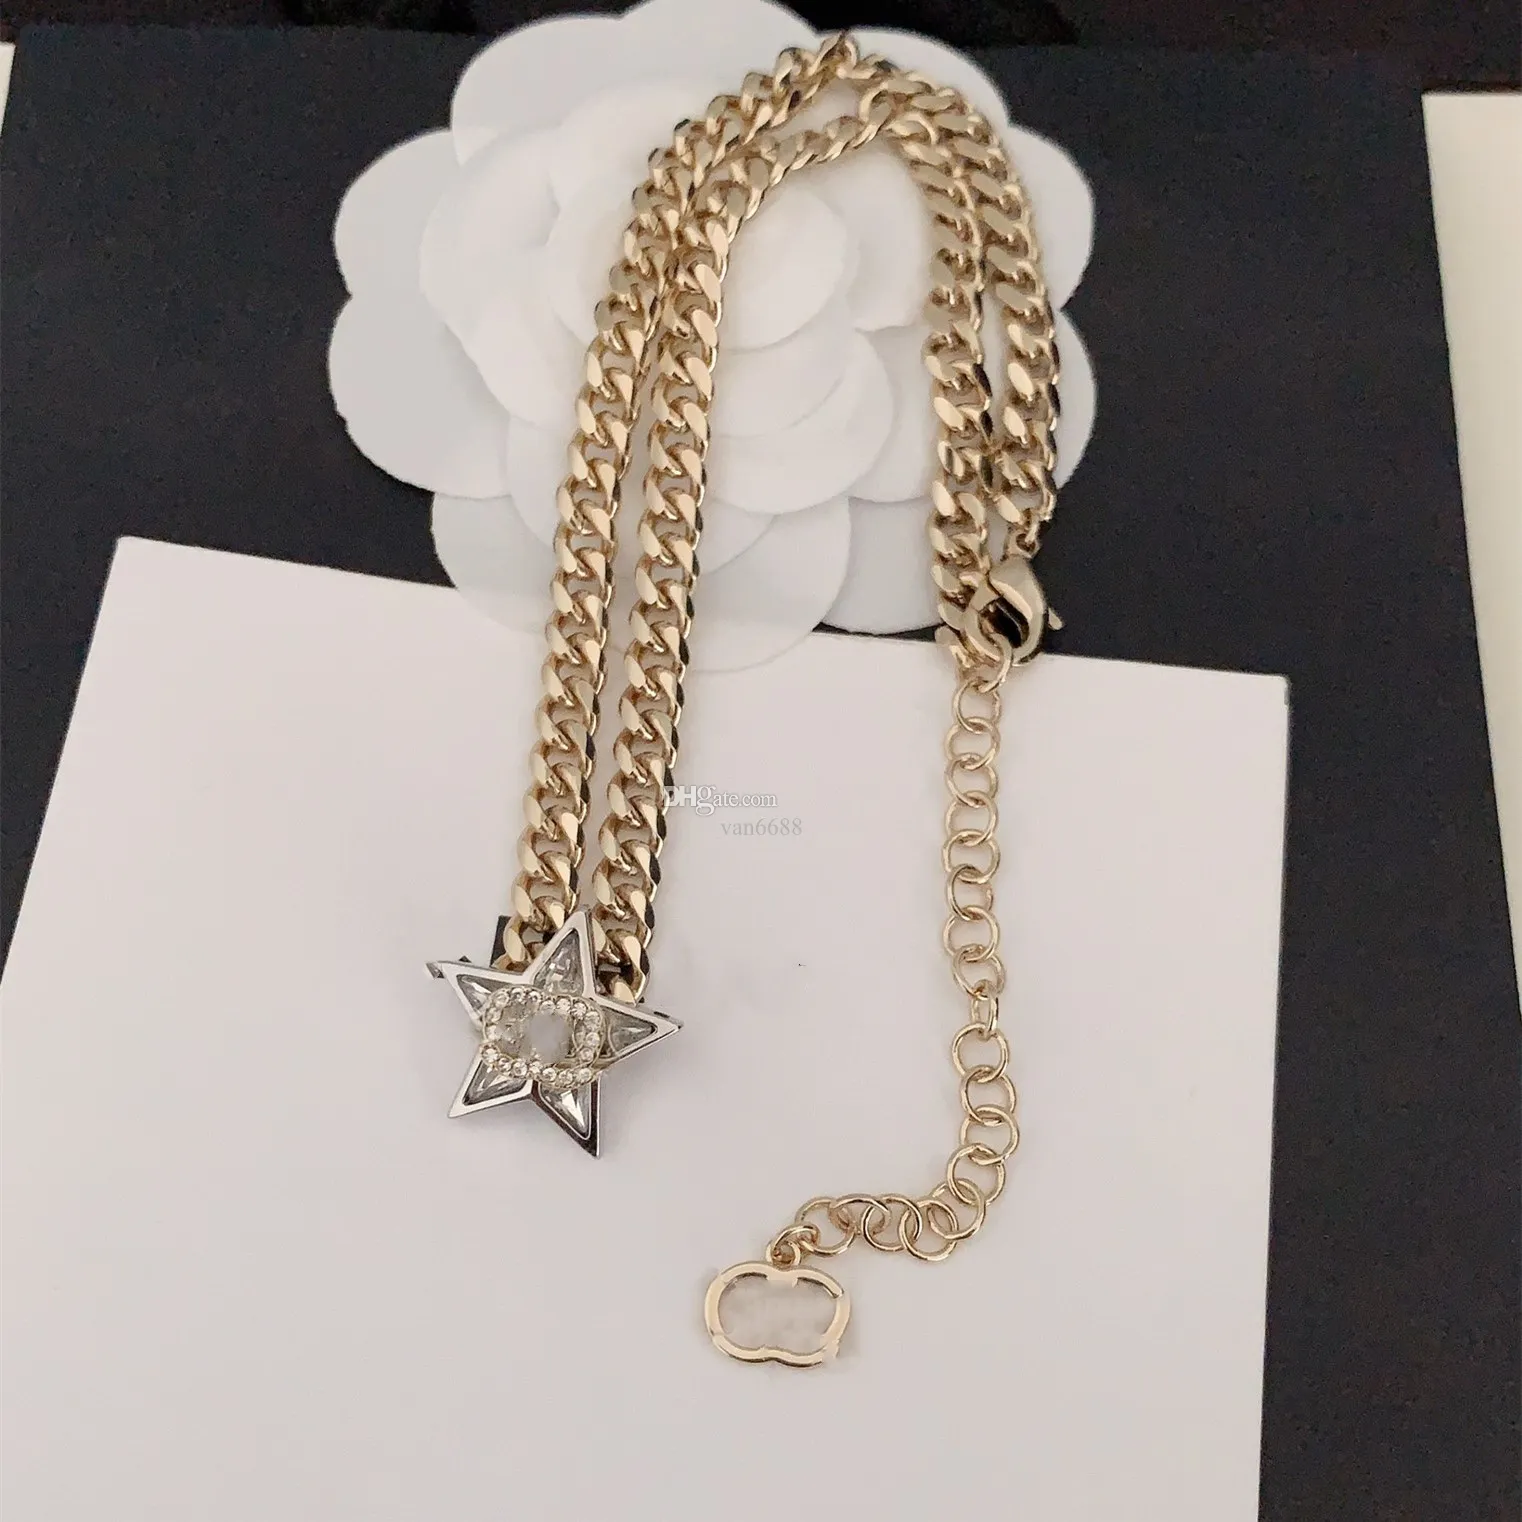 Designer de luxo pingente colares de alta qualidade marca carta cristal pérola colar canal links correntes populares amantes jóias natal sx3